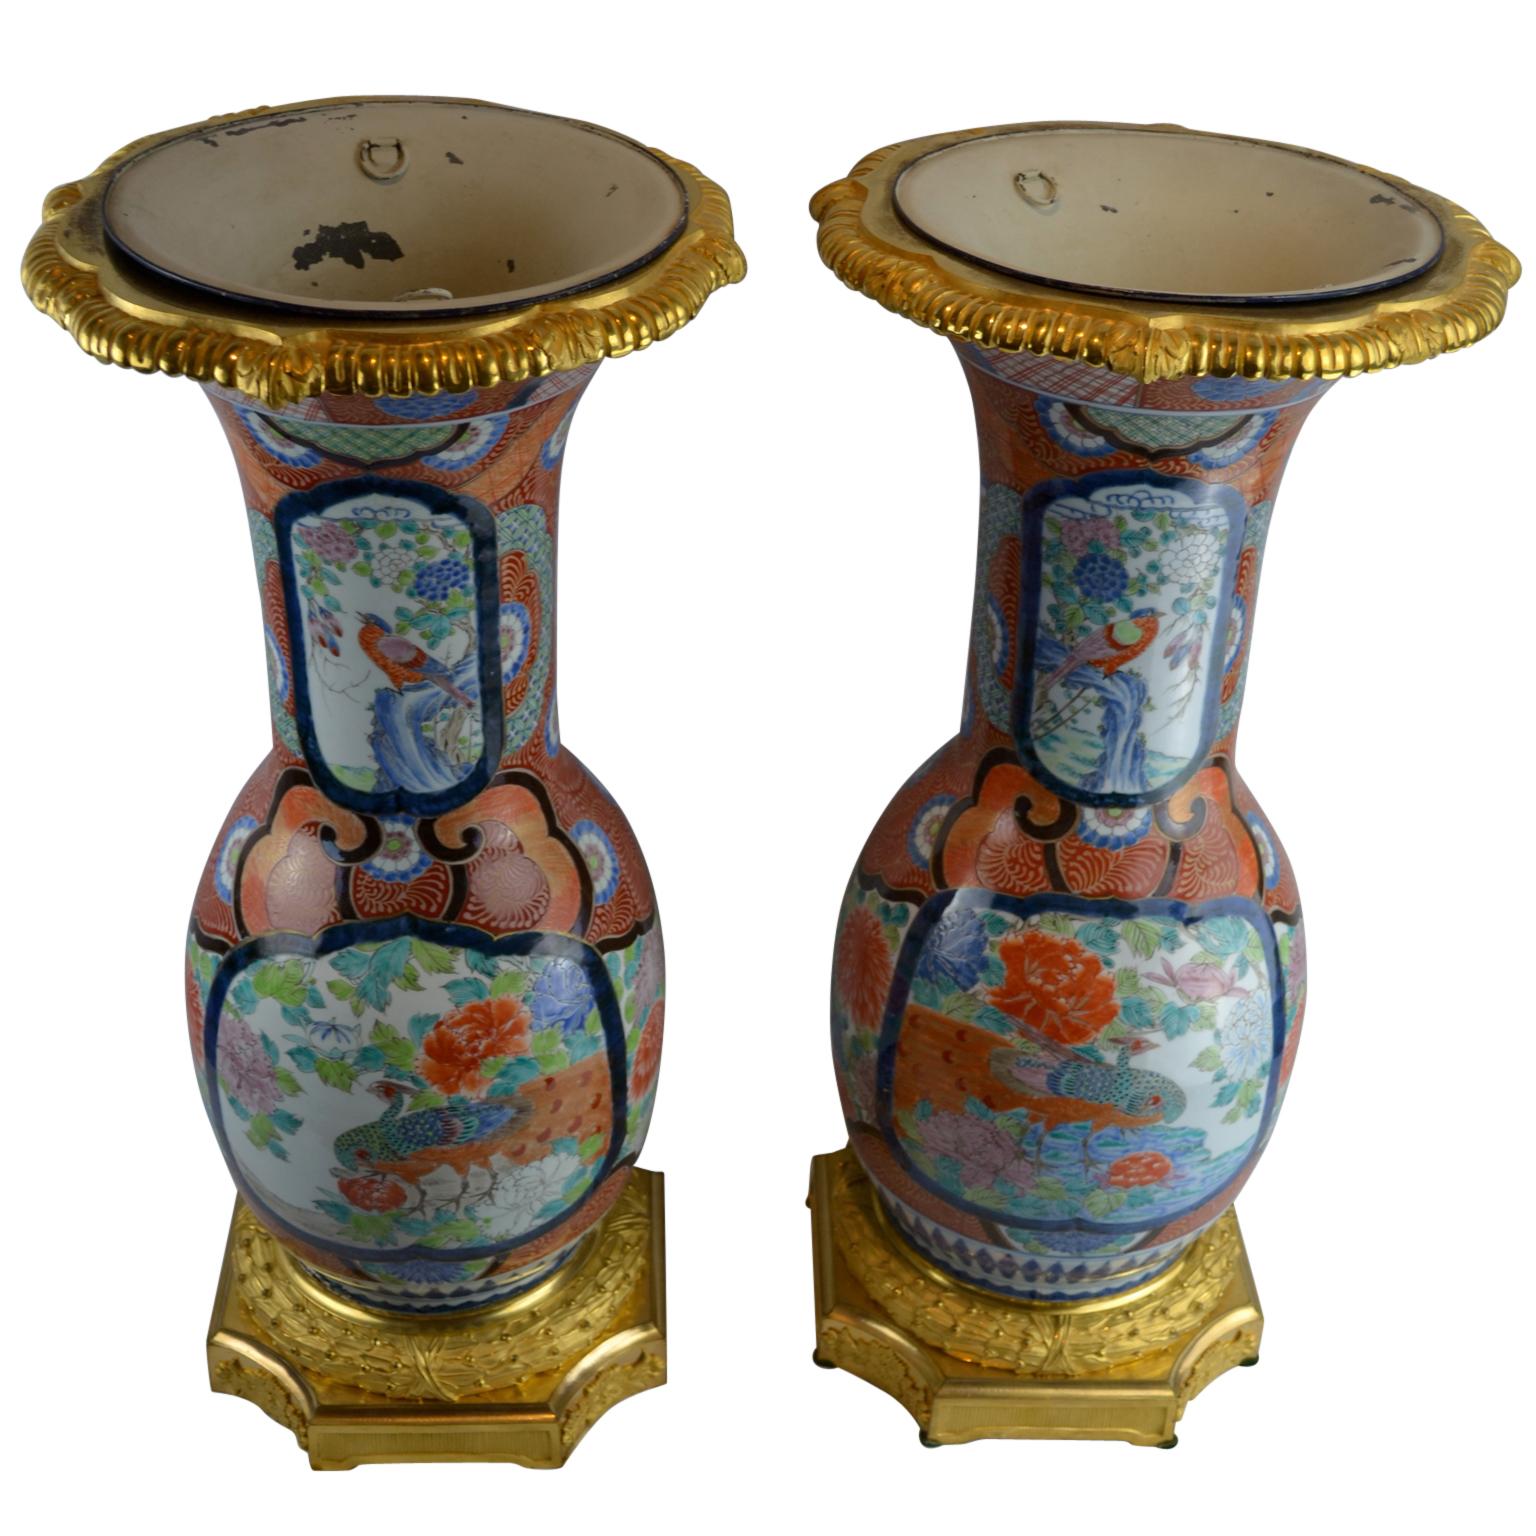 Impressionnante paire de vases en porcelaine japonaise Imari de la fin du XIXe siècle, décorés de paons colorés, d'autres oiseaux, de fleurs et de chrysanthèmes, fabriqués pour l'exportation vers la France où les bases et les bords en bronze doré